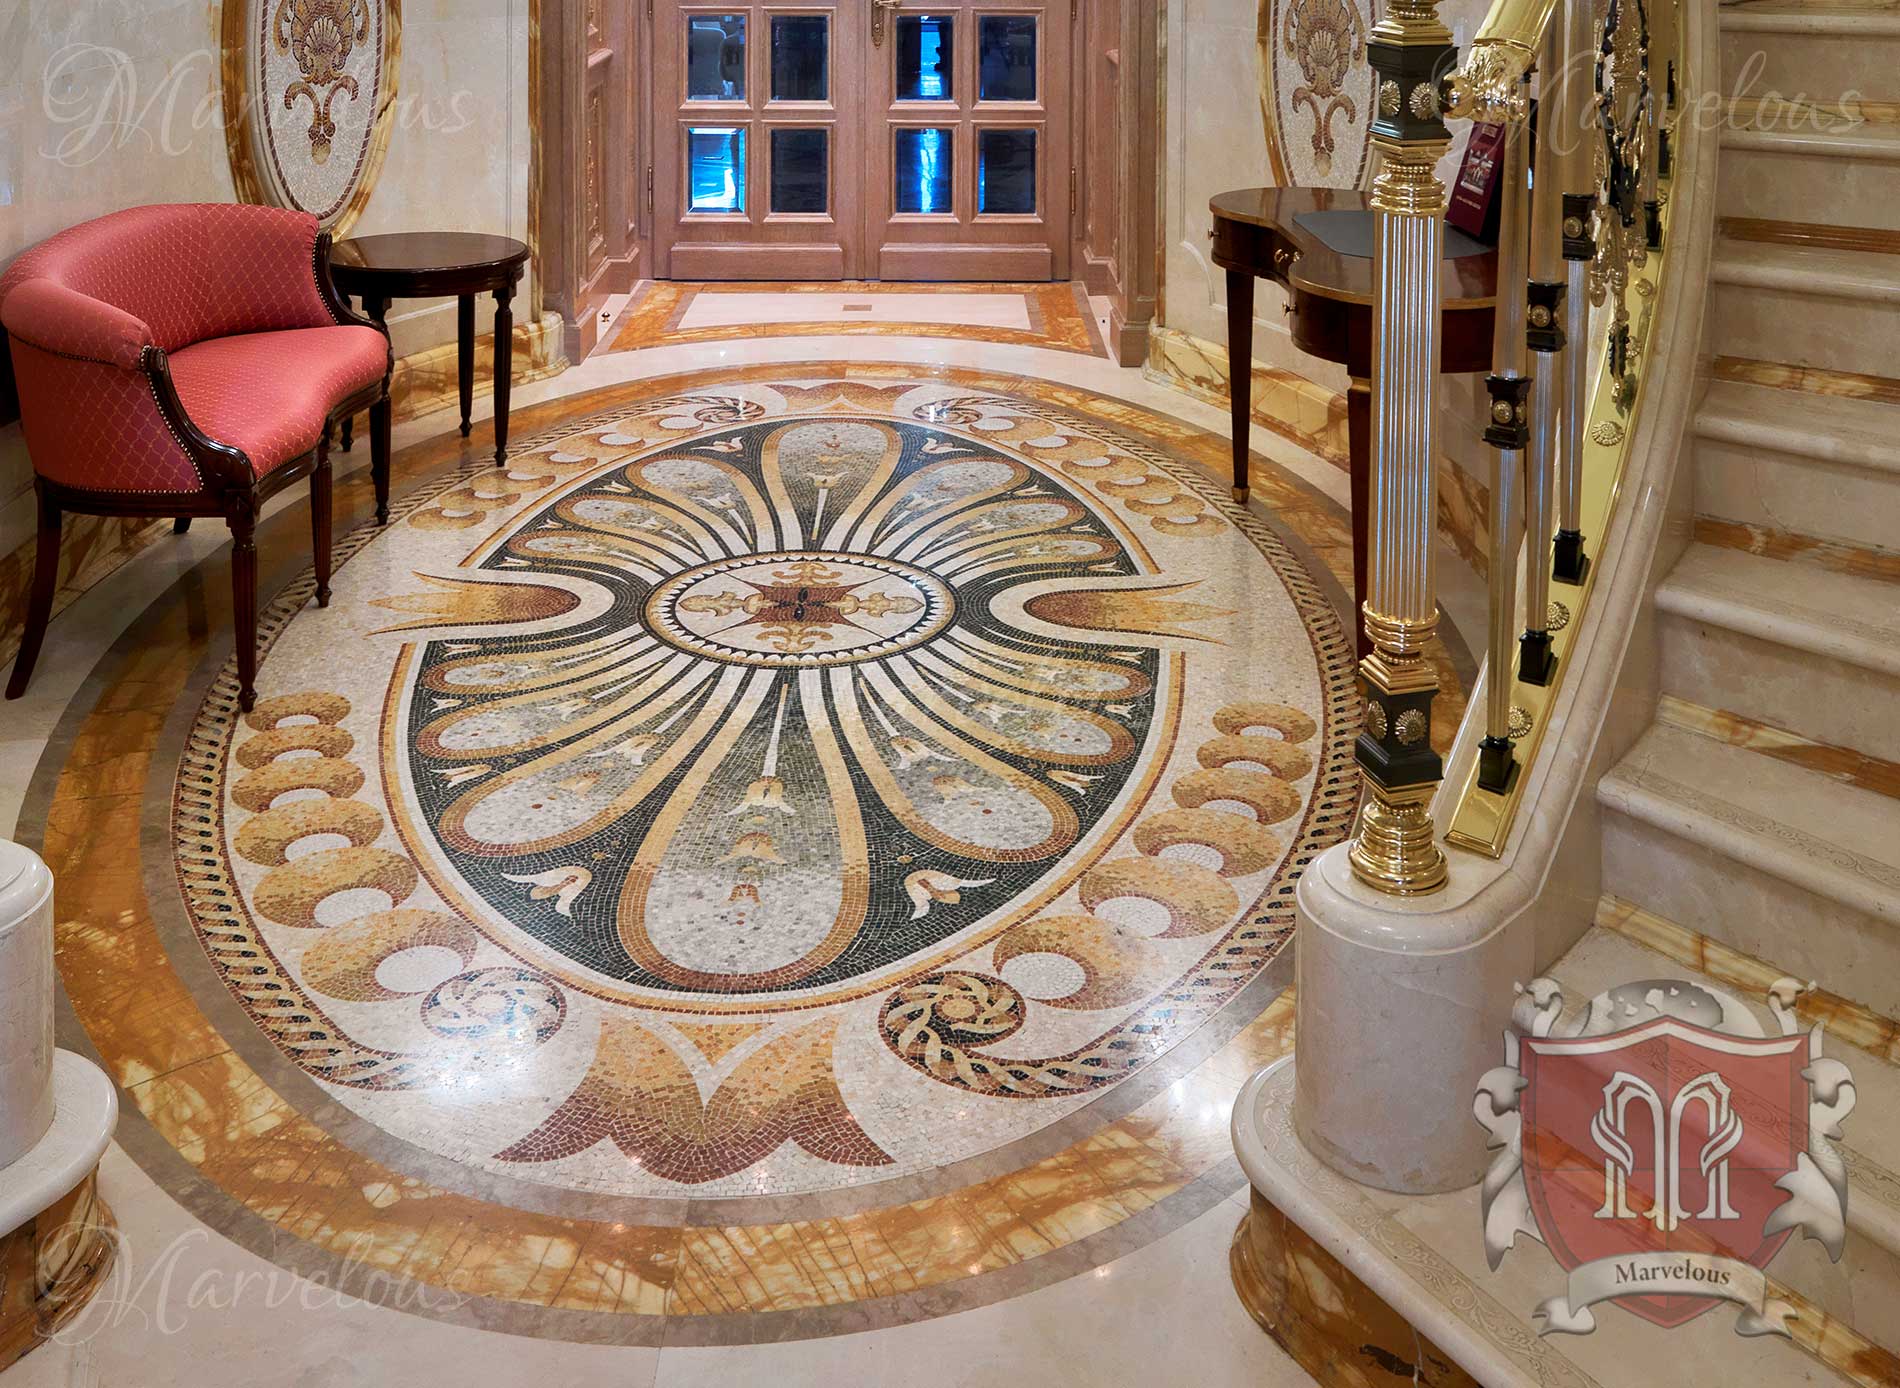 Marble Floor Mosaic: Cavatina